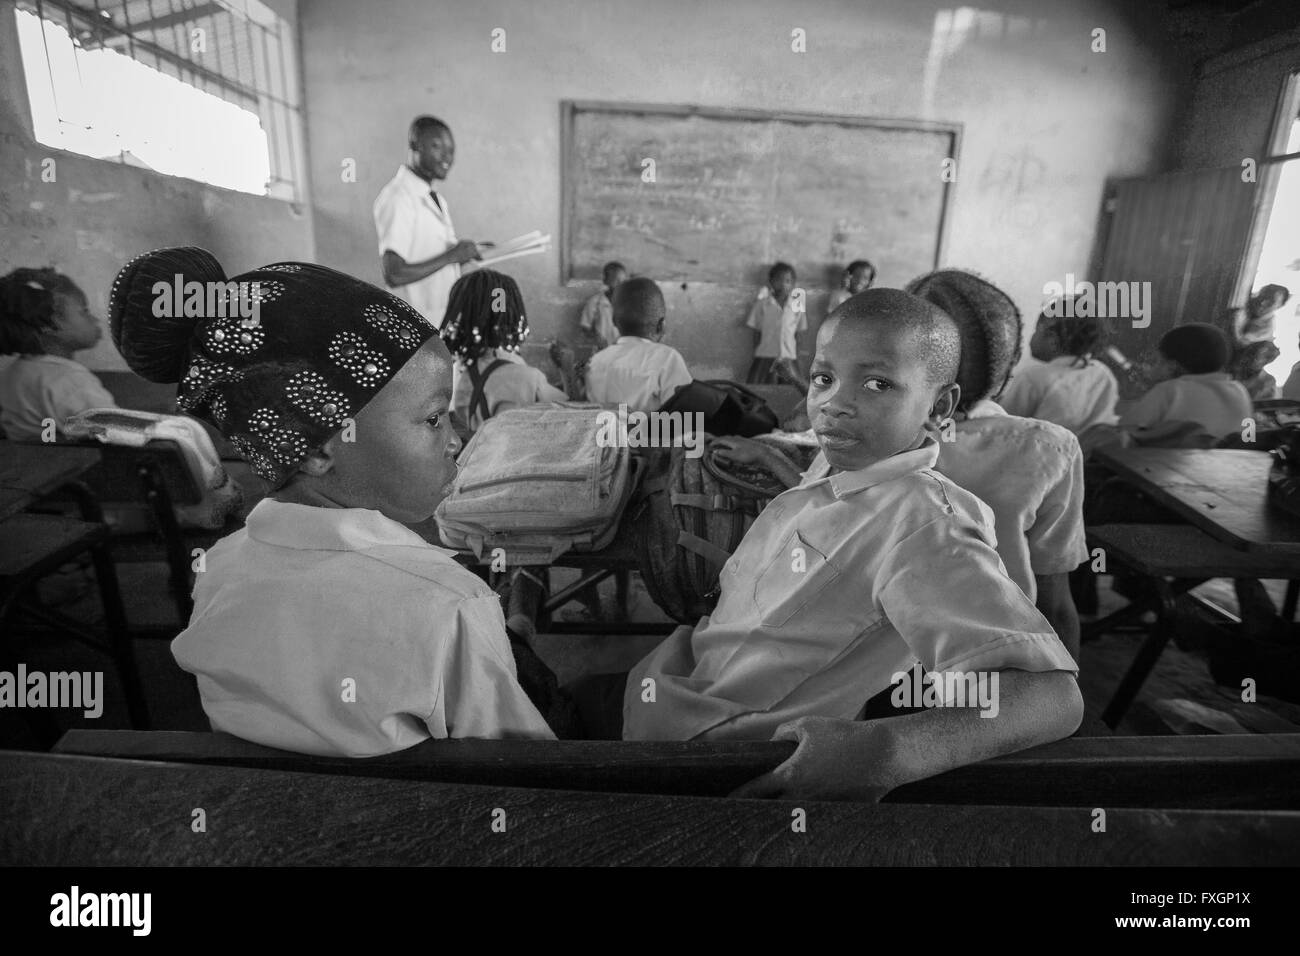 Mosambik, ein Lehrer in einer Klasse mit Schülern unternimmt eine Lektion, schwarz und weiß, B&W. Stockfoto